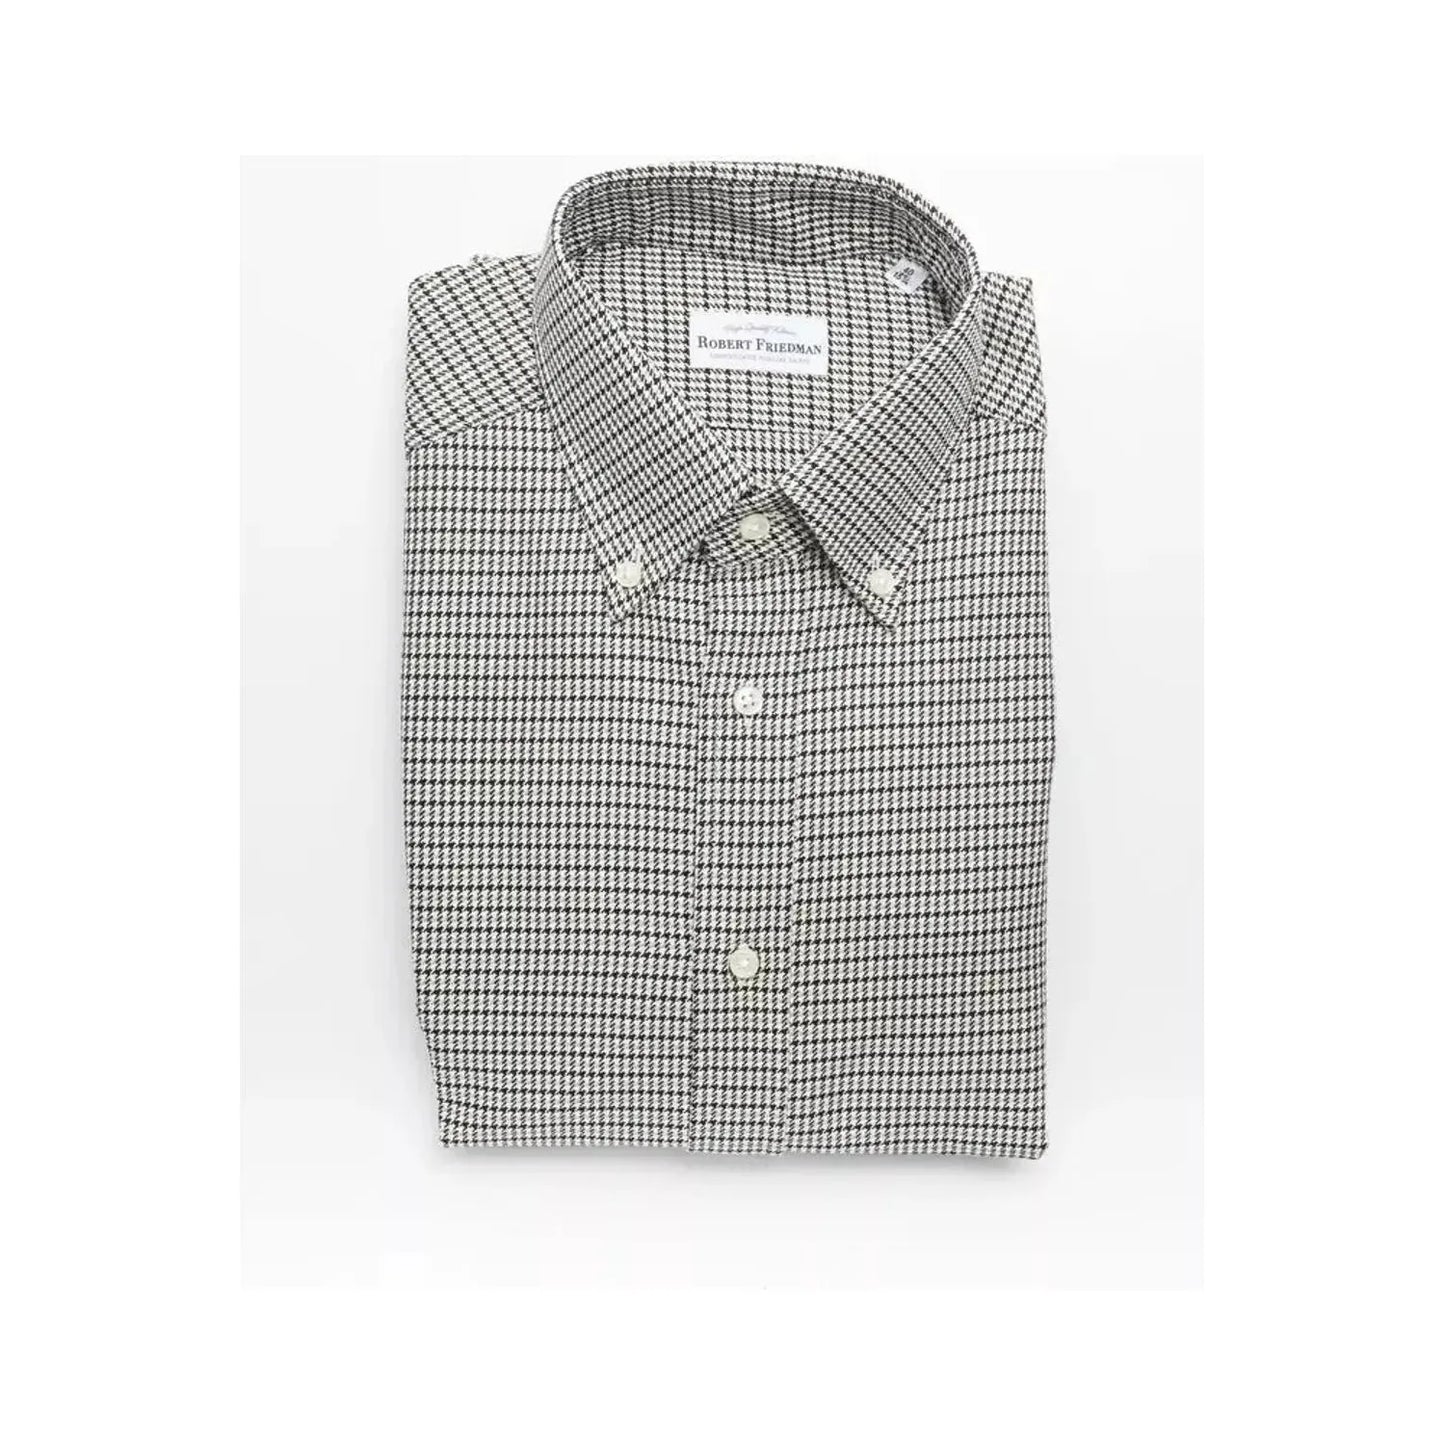 Robert Friedman Beige Cotton Button Down Regular Shirt beige-cotton-shirt-1 stock_product_image_20448_1485959833-30-d9ad4348-390.webp